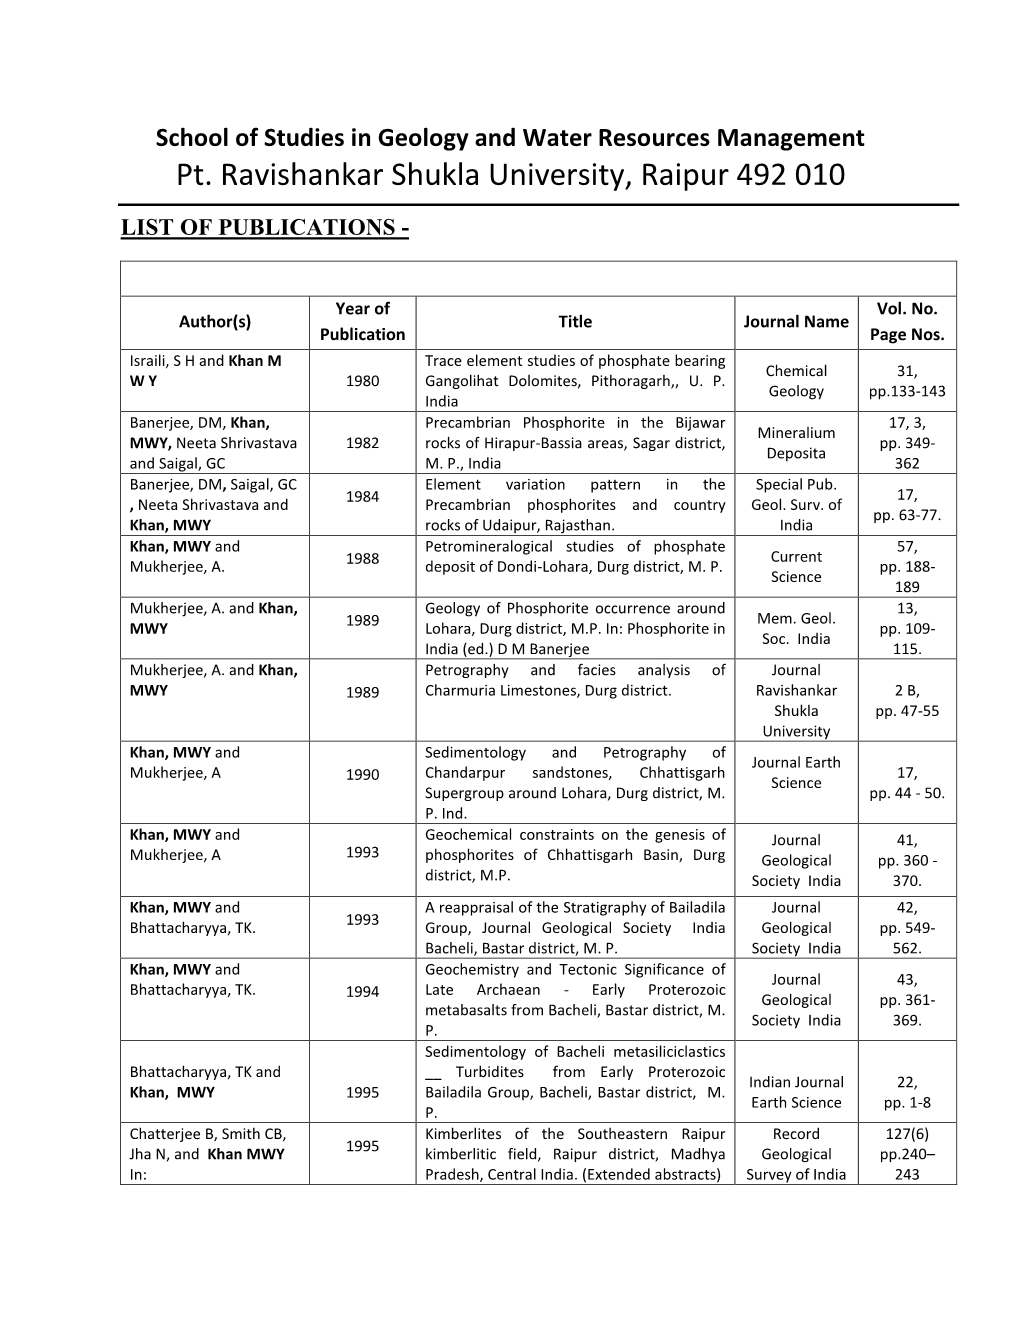 Pt. Ravishankar Shukla University, Raipur 492 010